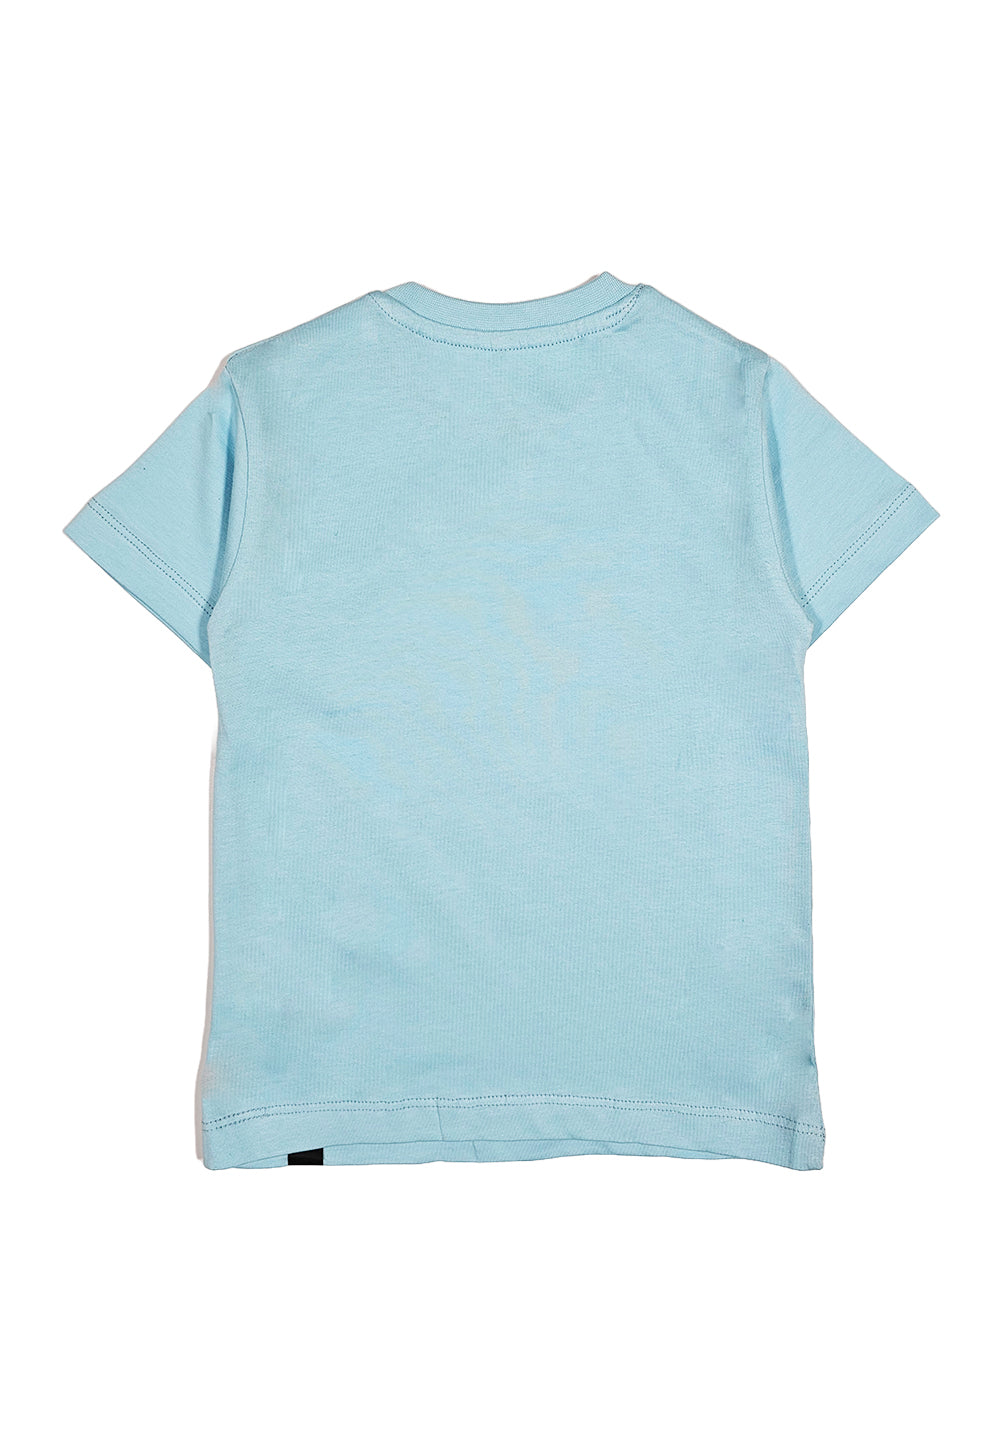 T-shirt celeste per neonato